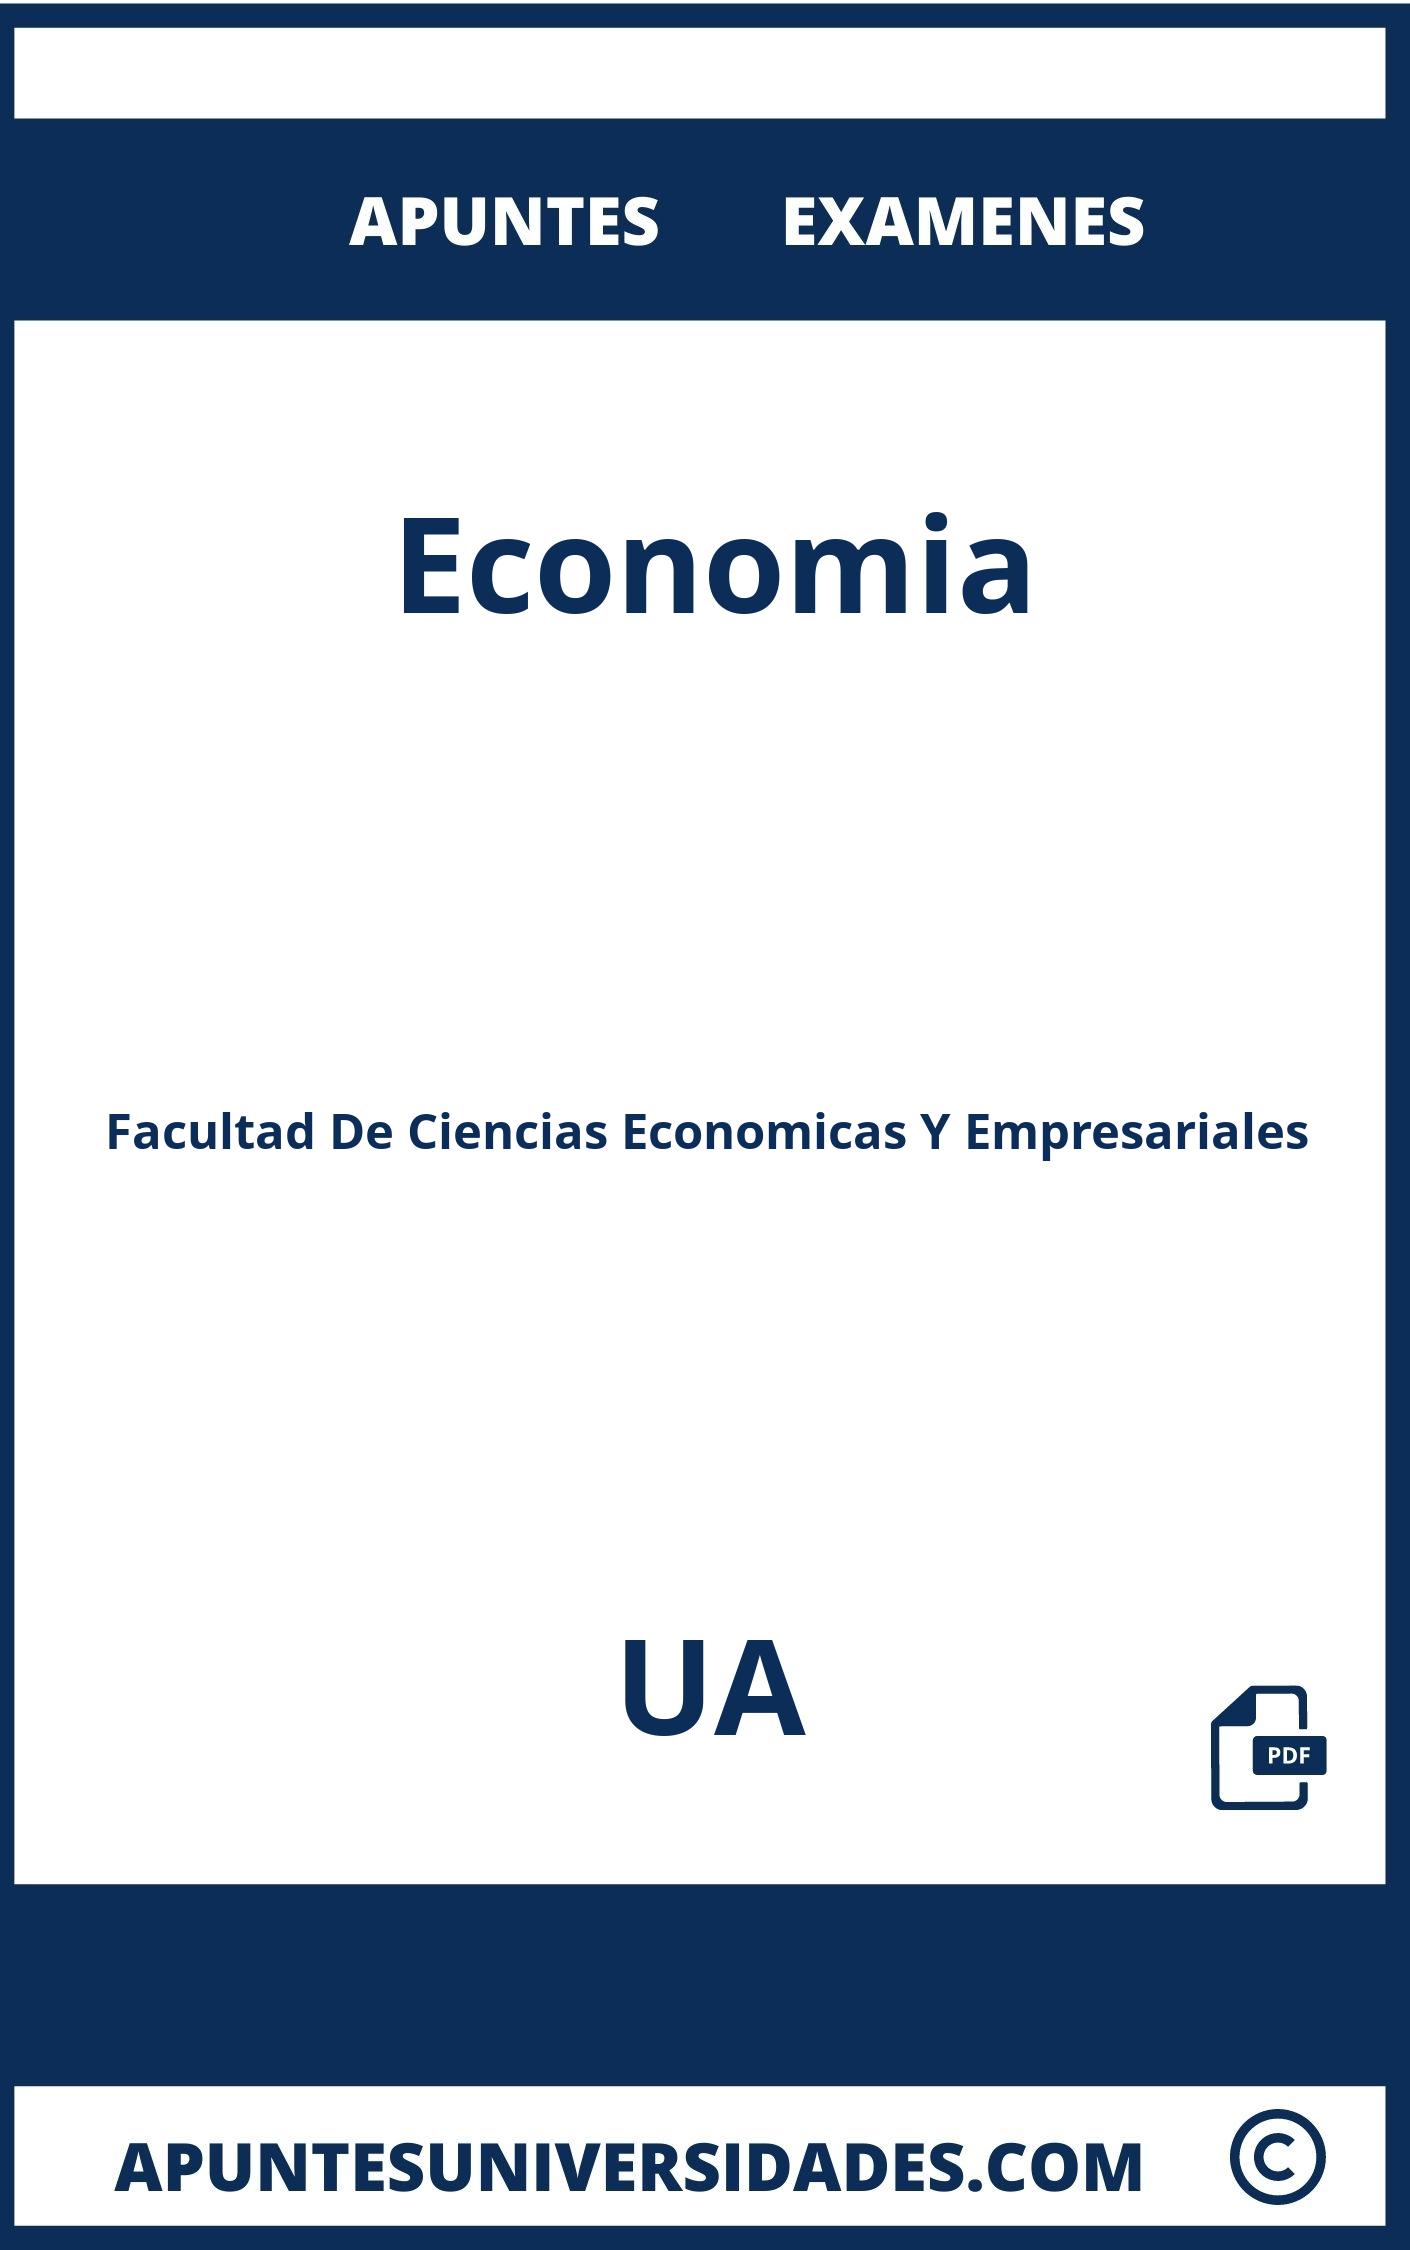 Apuntes y Examenes Economia UA